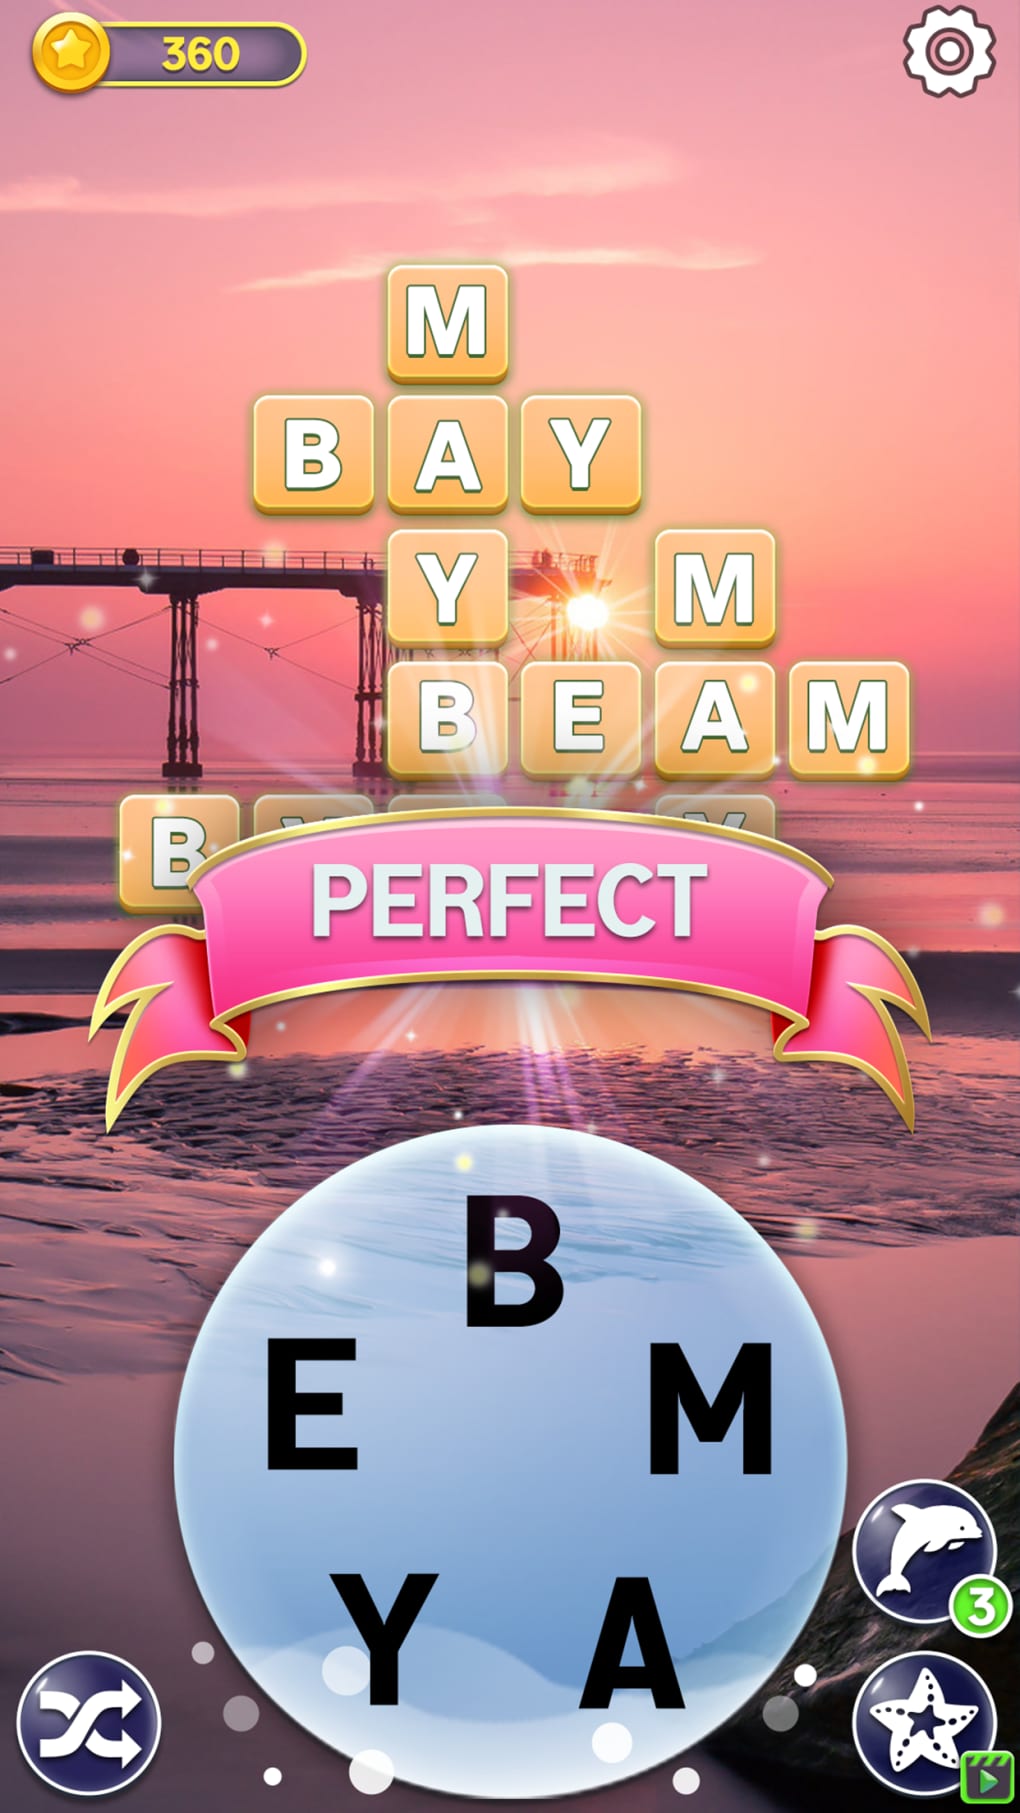 Finalmente um jogo de palavras cruzadas em português para o iPhone »